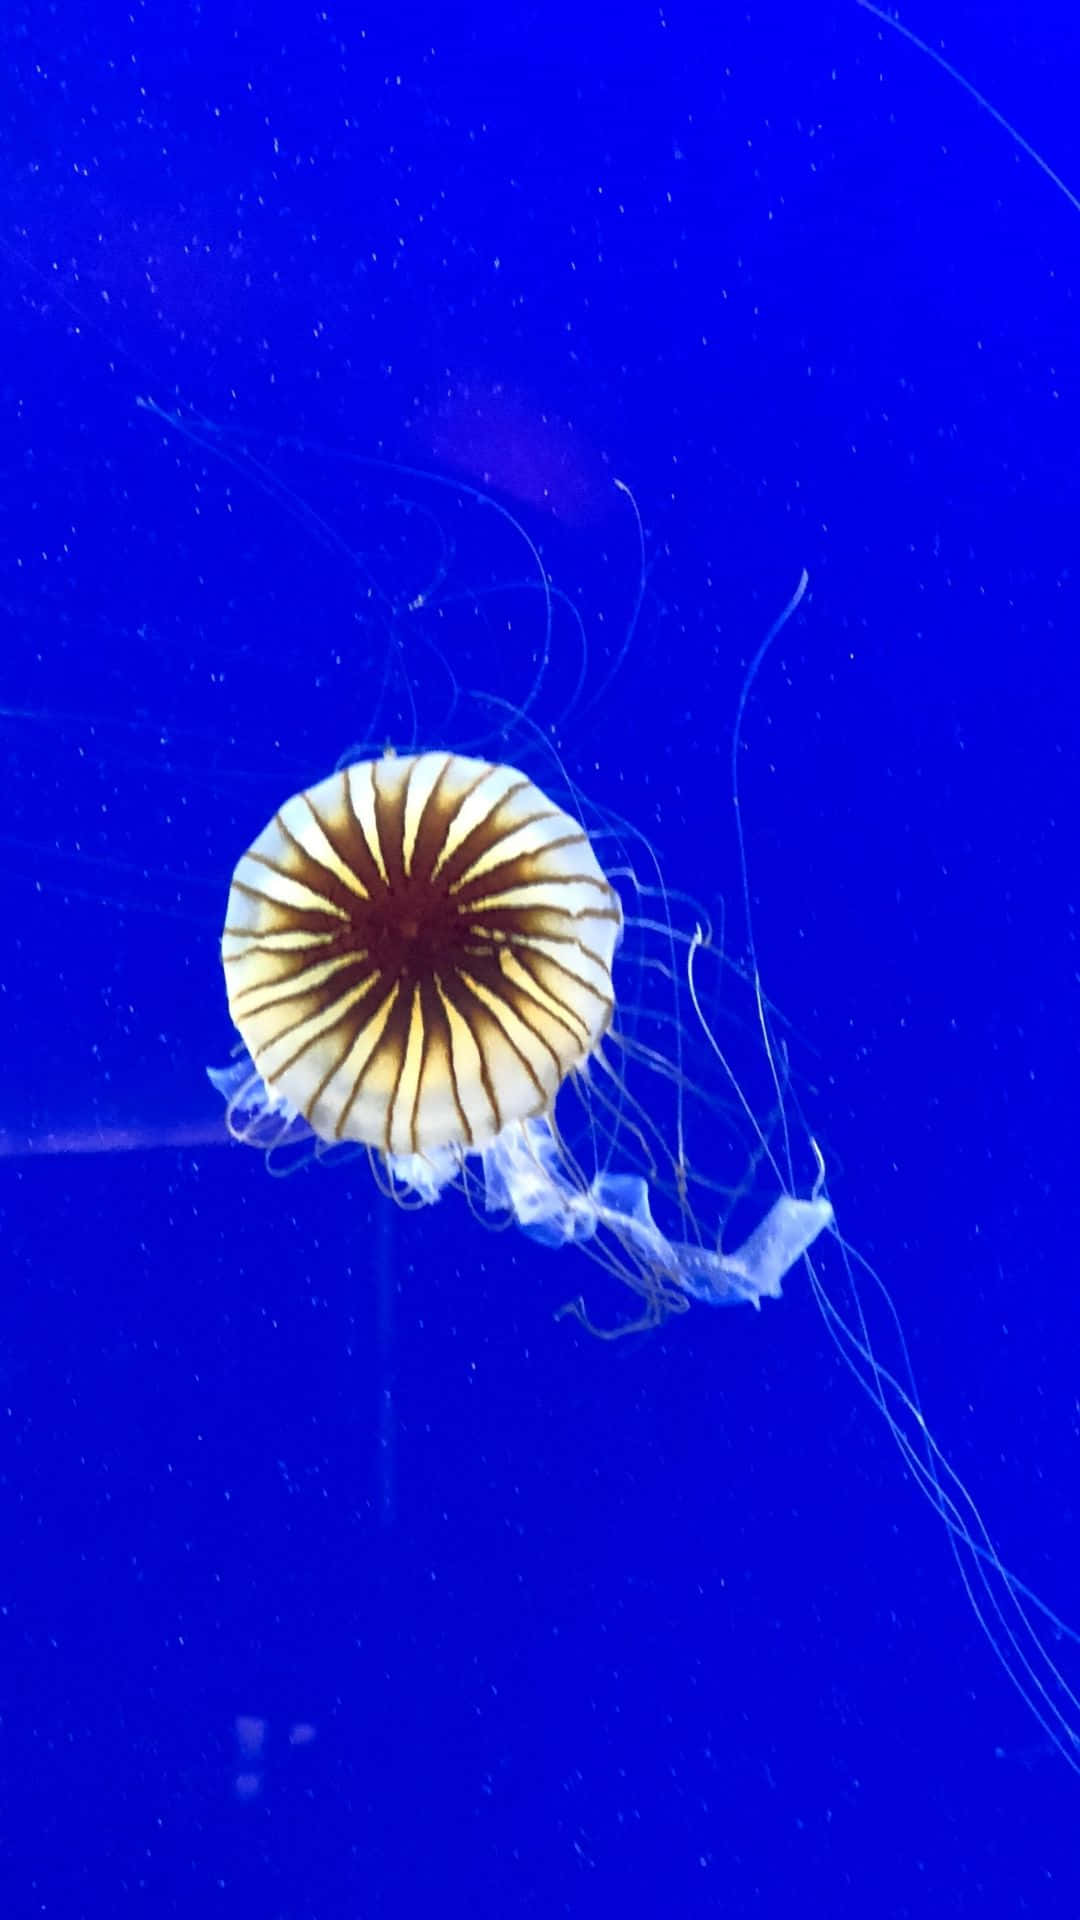 Jellyfishbakgrundsbild.